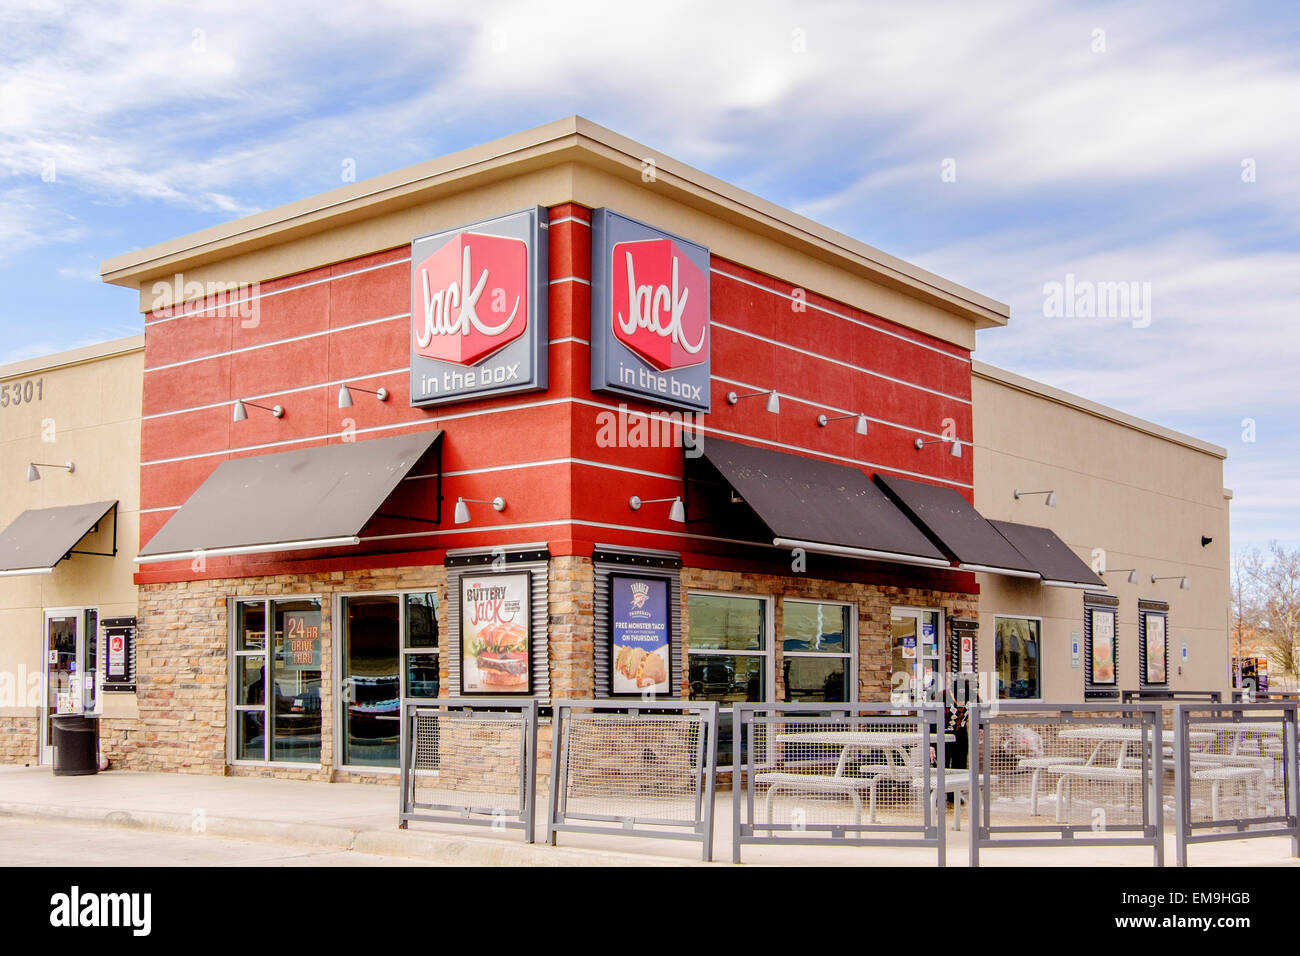 La devanture extérieure et l'entrée d'un Jack dans la chaîne de restauration rapide. Oklahoma City, Oklahoma, USA. Banque D'Images